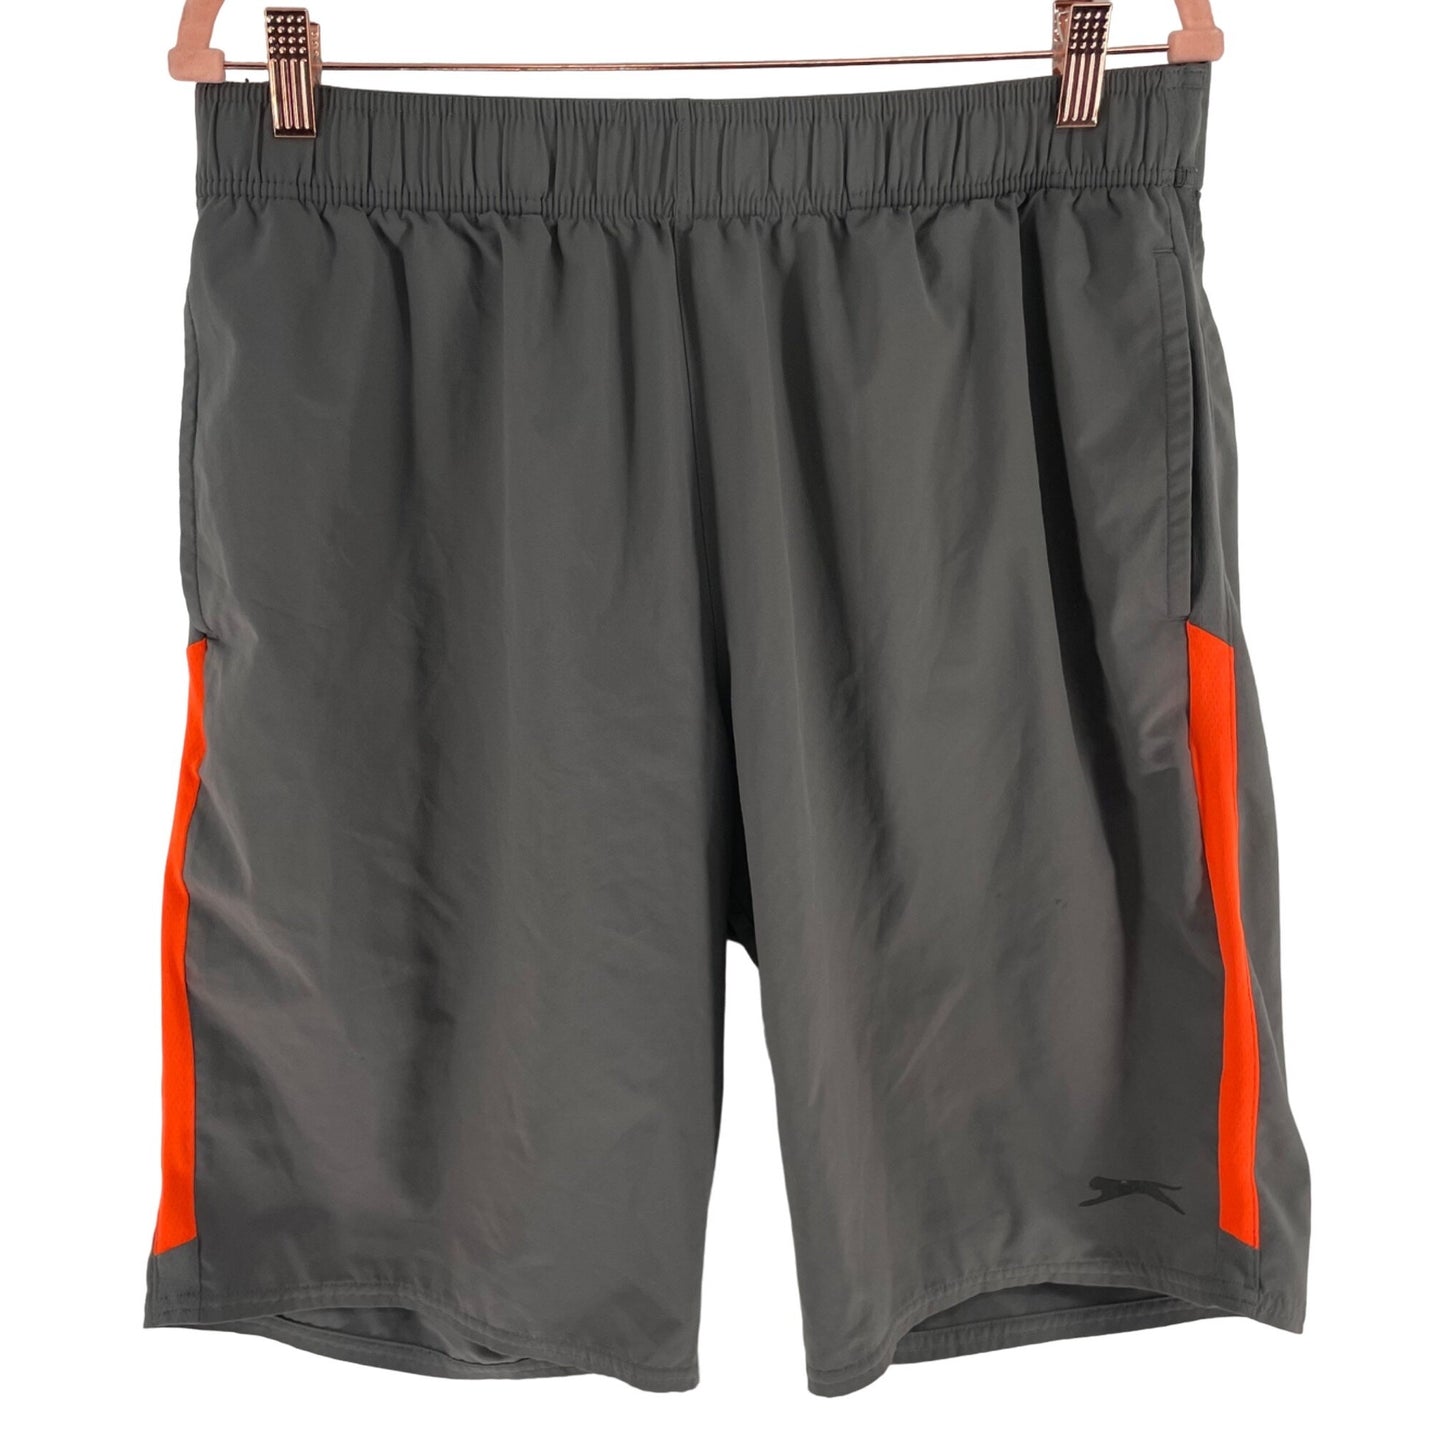 Slazenger Men's Size Large Grey & Orange Tennis Workout/Exercise Shorts